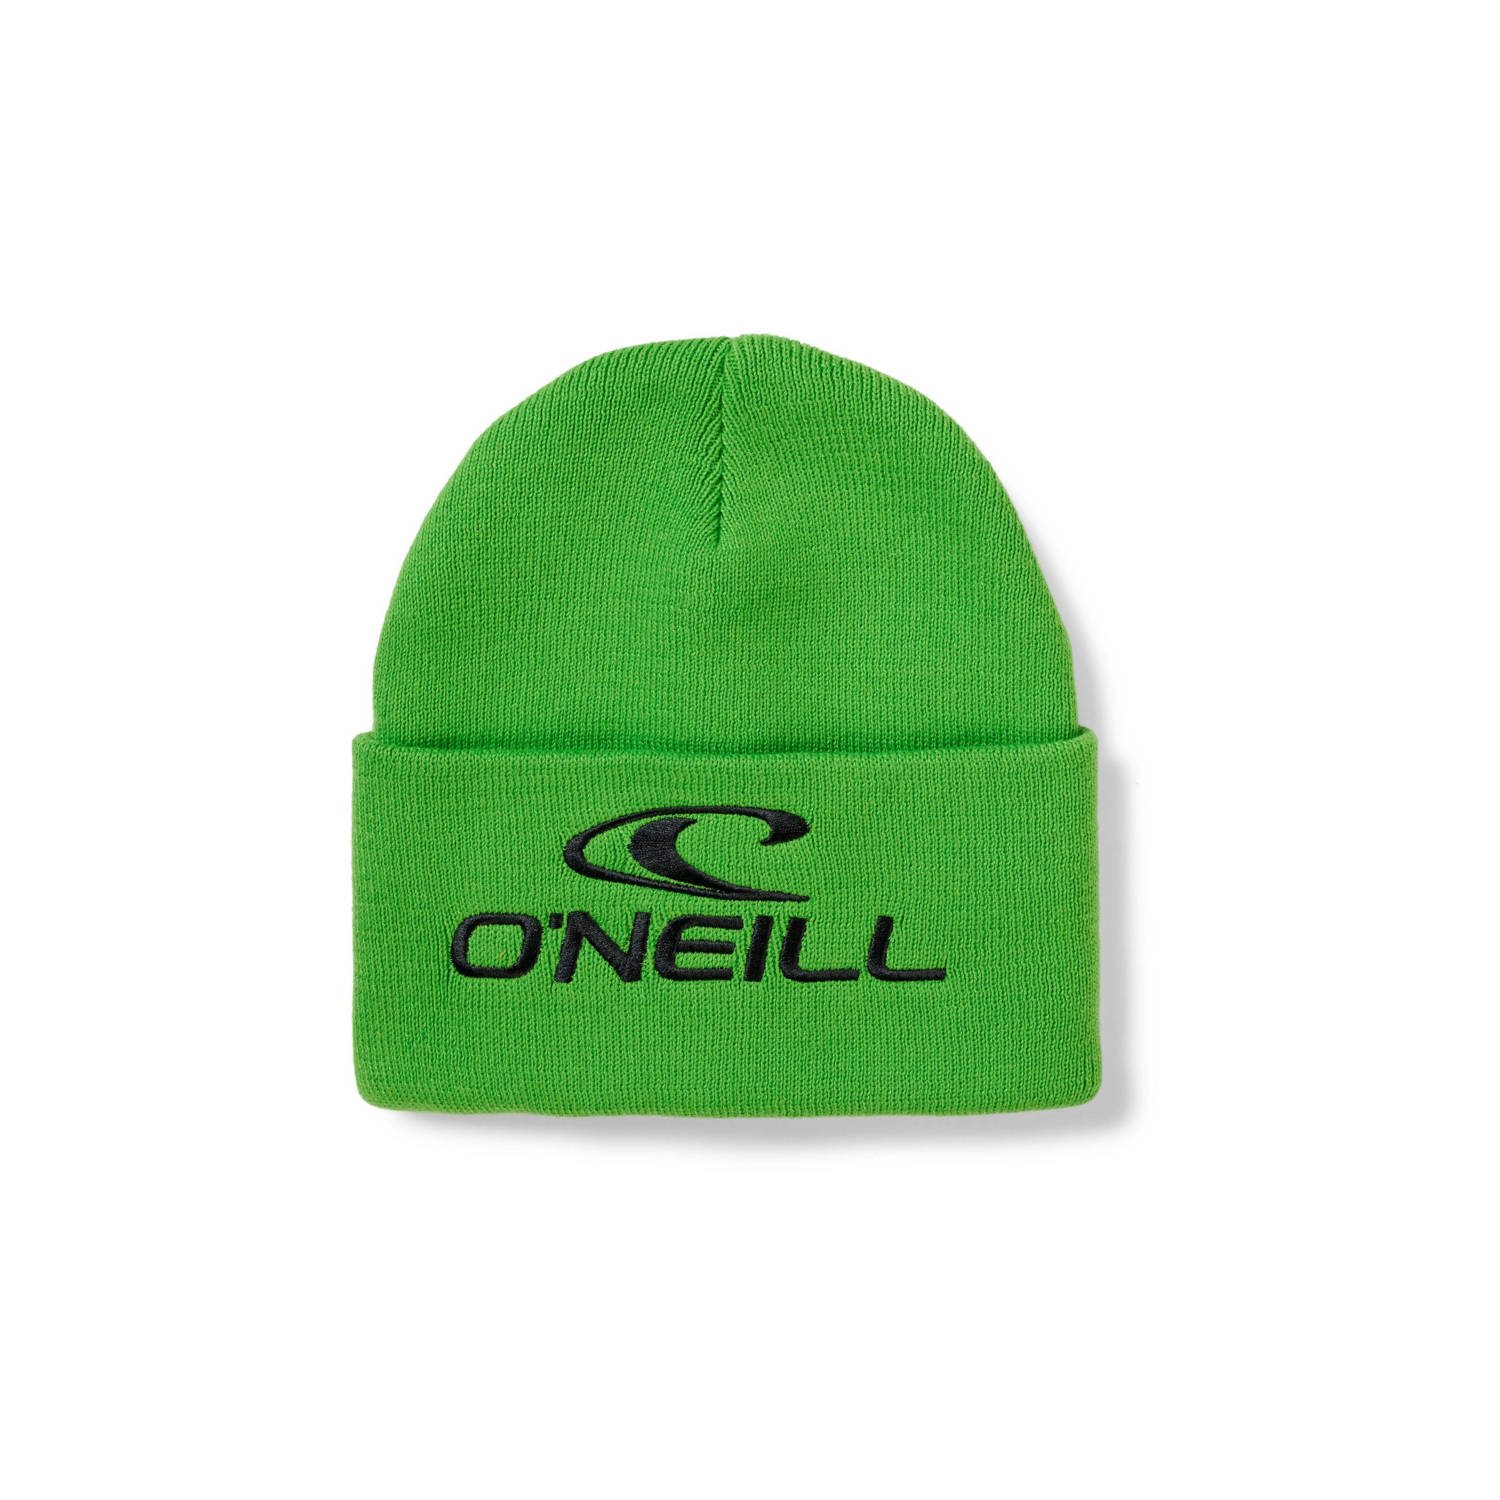 O'Neill muts Rutile groen